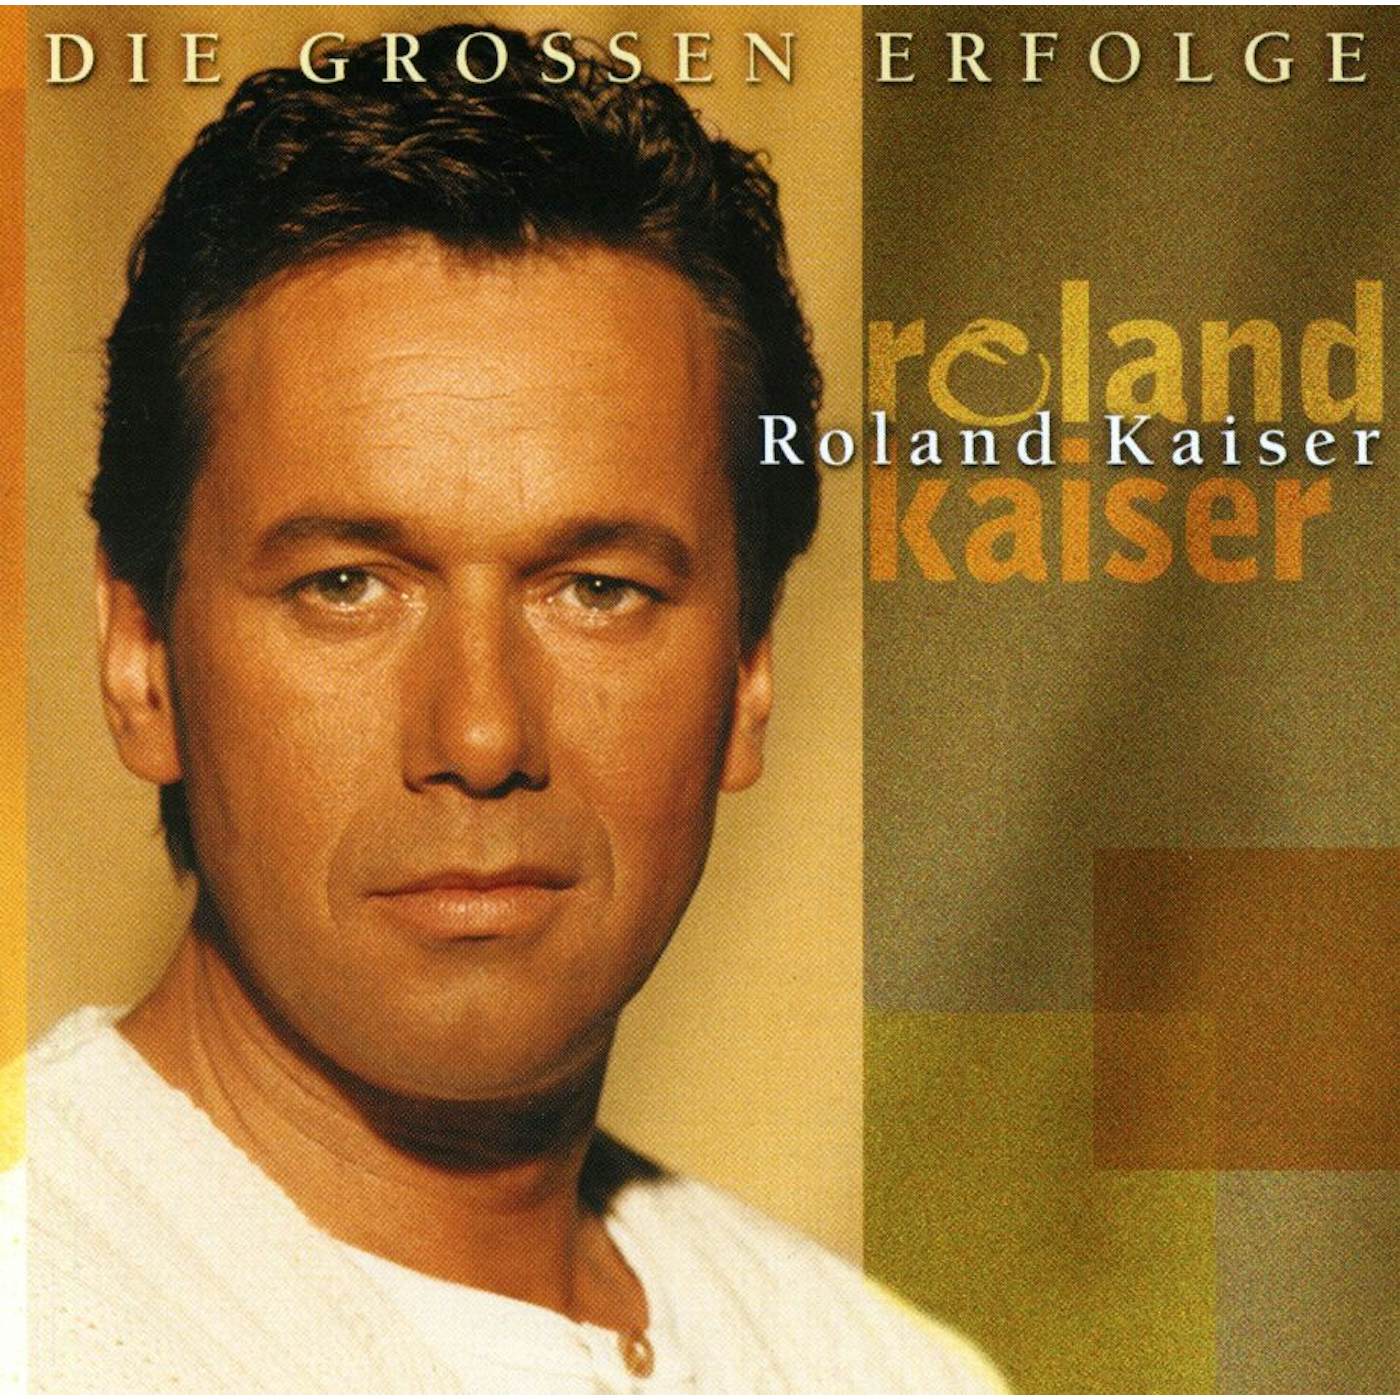 Roland Kaiser DIE GROSSEN ERFOLGE CD